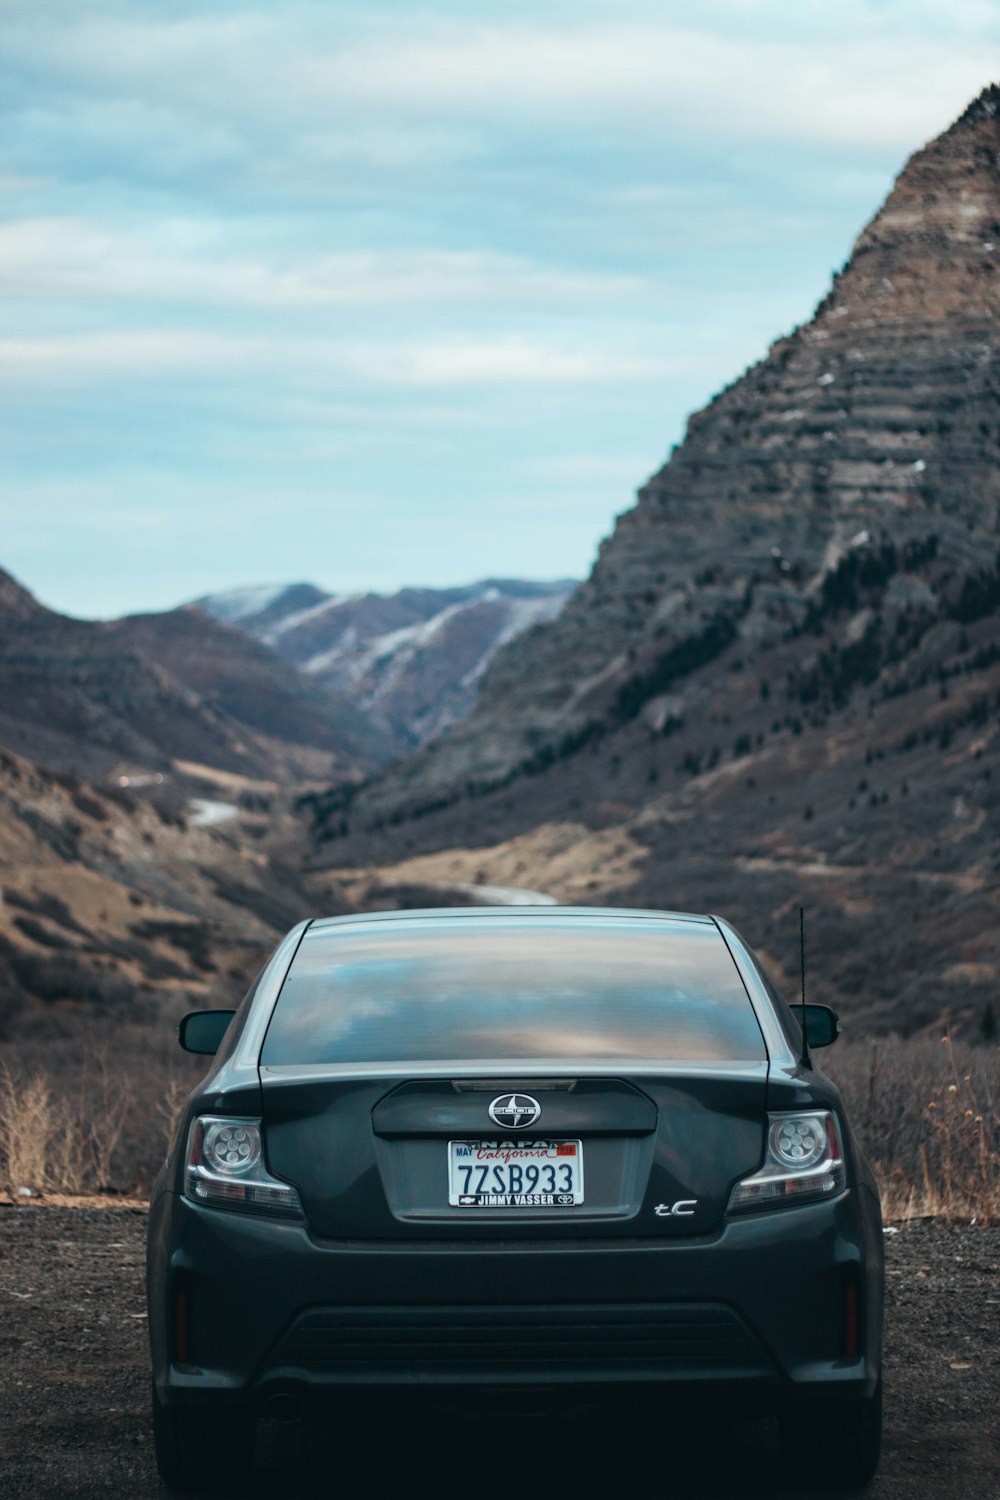 山脈の近くに駐車された黒いサイオン車